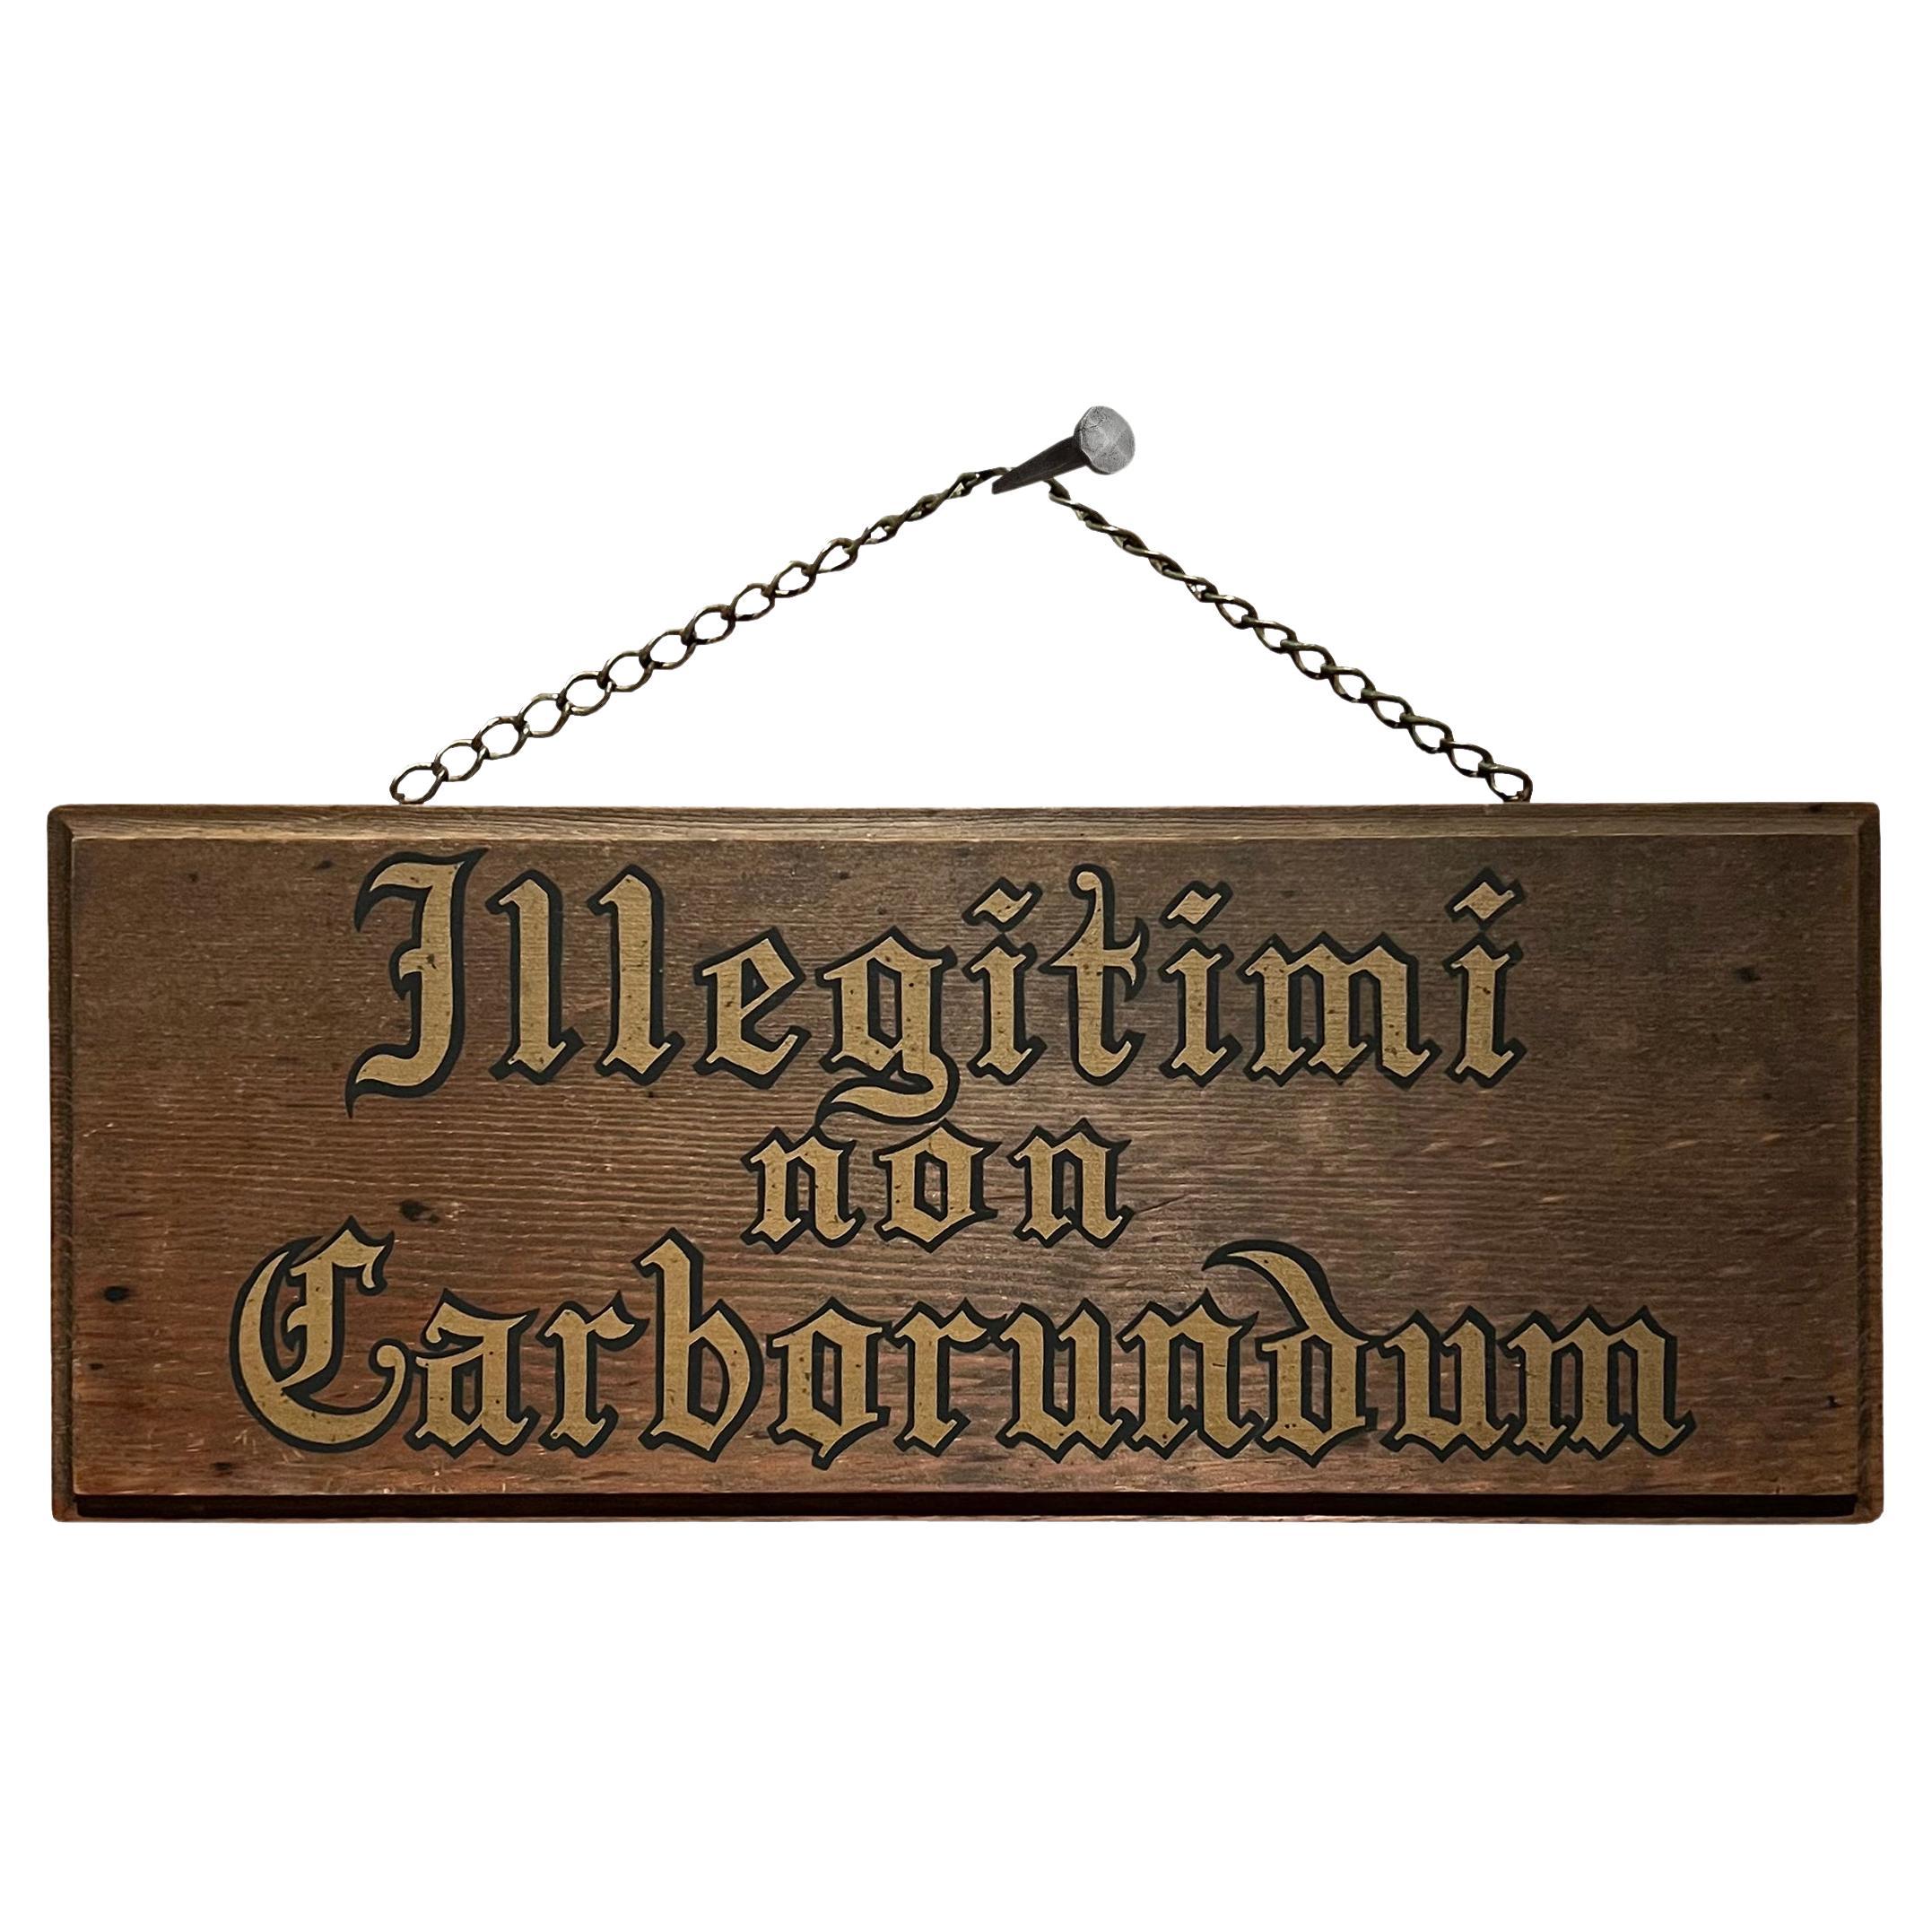 Mid-20th Century 'Illegitimi non Carborundum' Sign